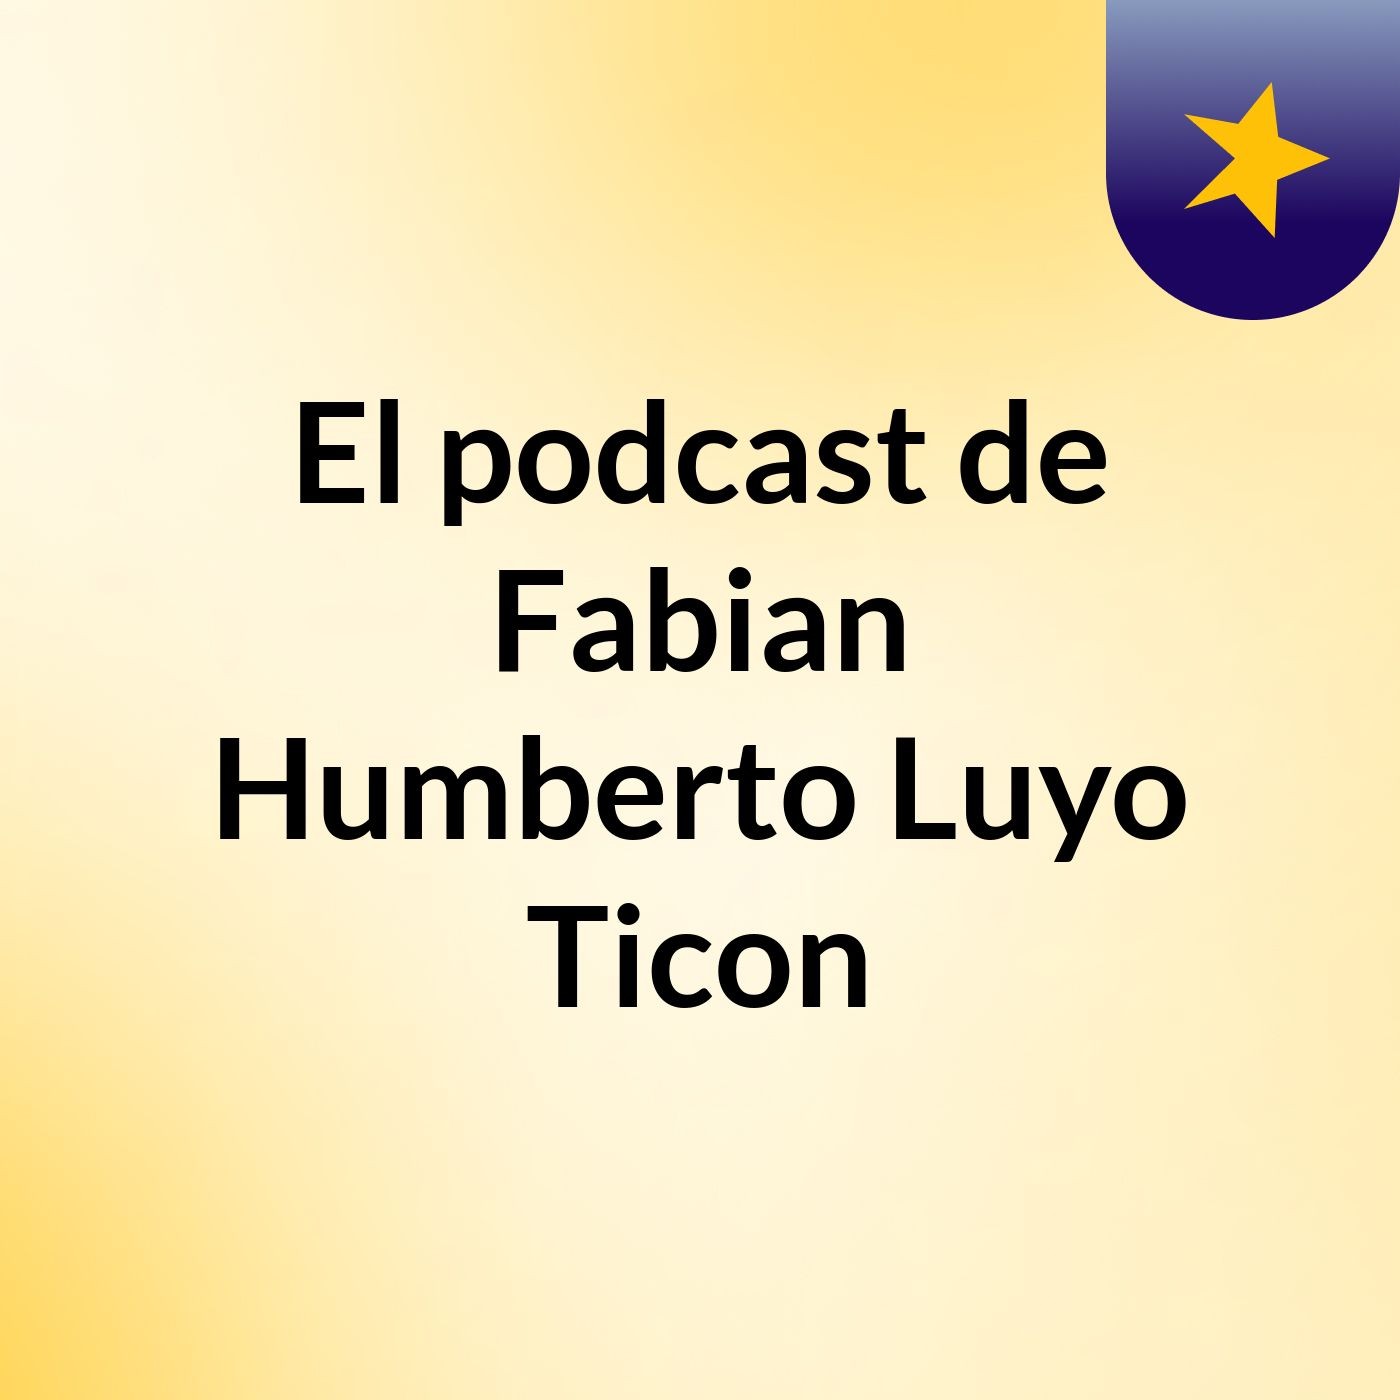 El podcast de Fabian Humberto Luyo Ticon